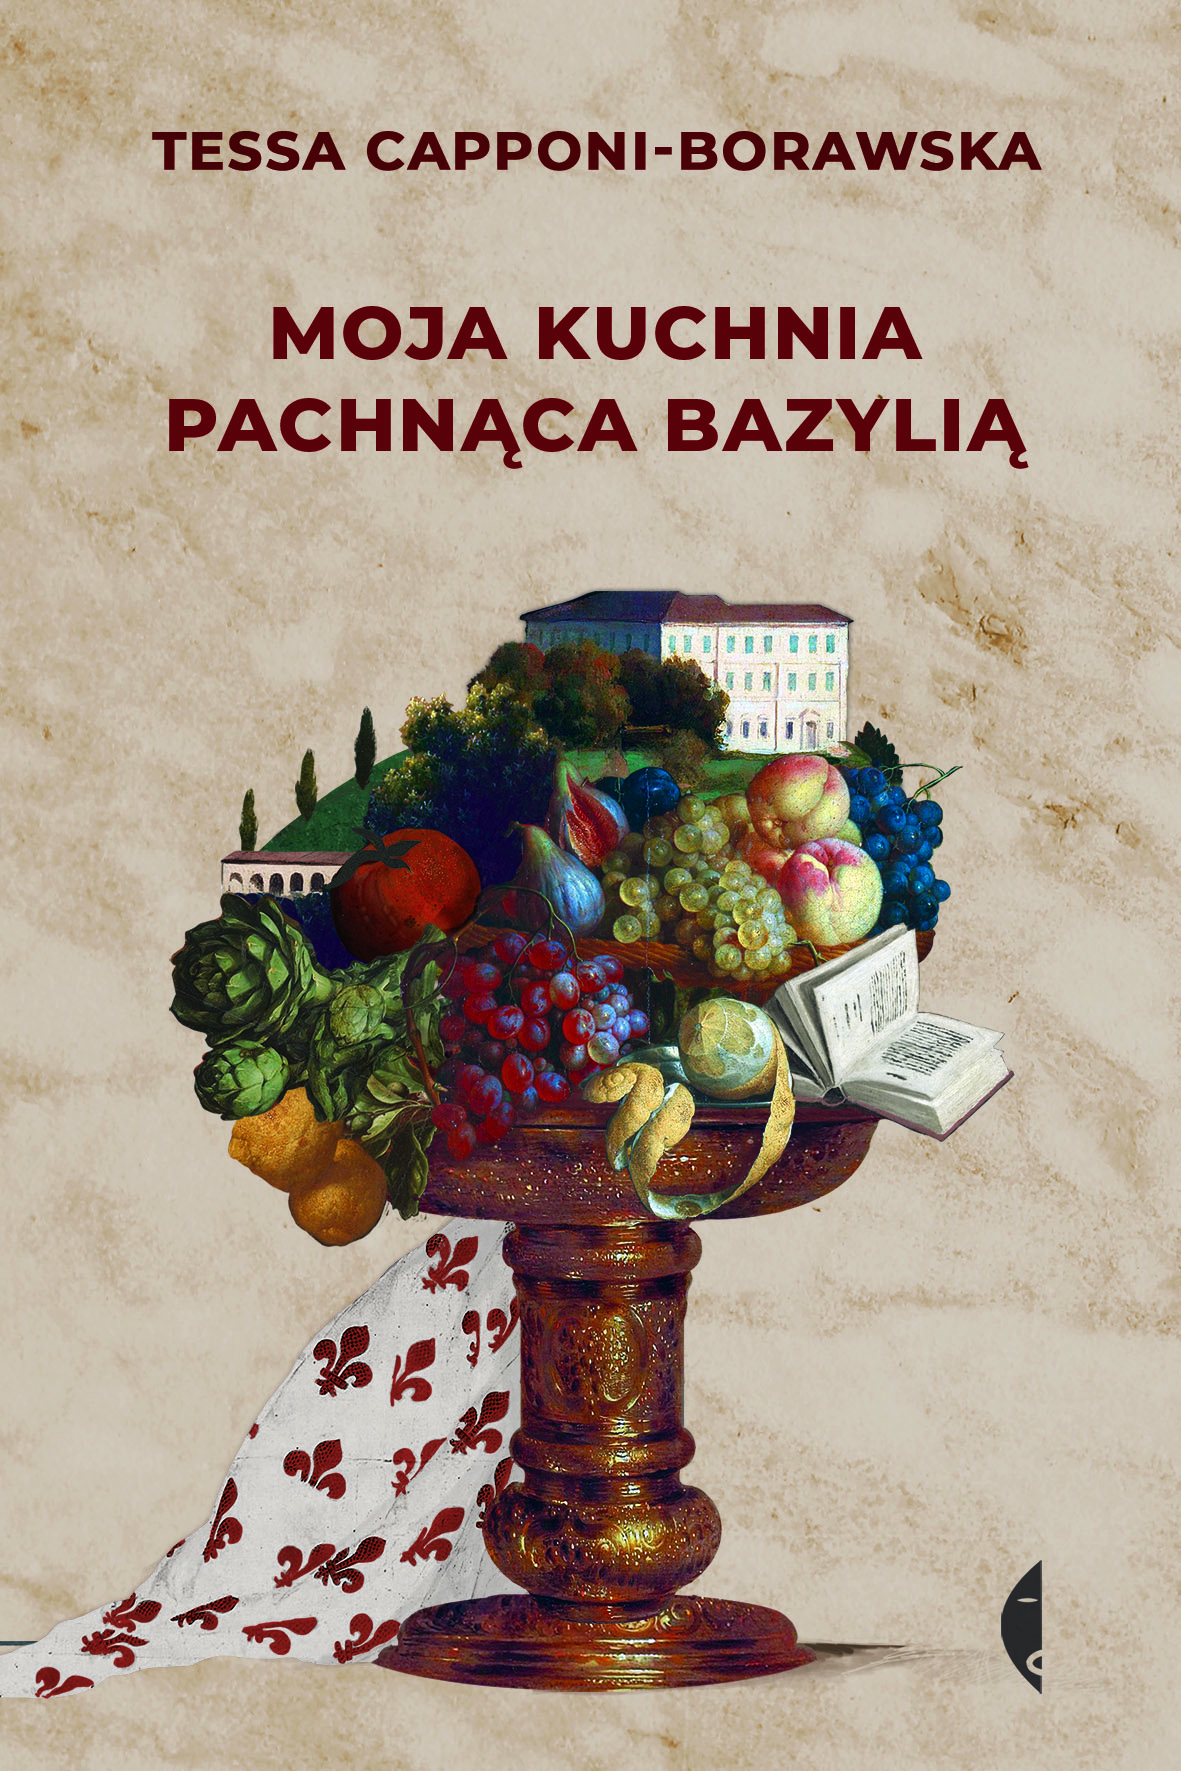 Moja kuchnia pachnąca bazylią, Tessa Capponi-Borawska, Wydawnictwo Czarne